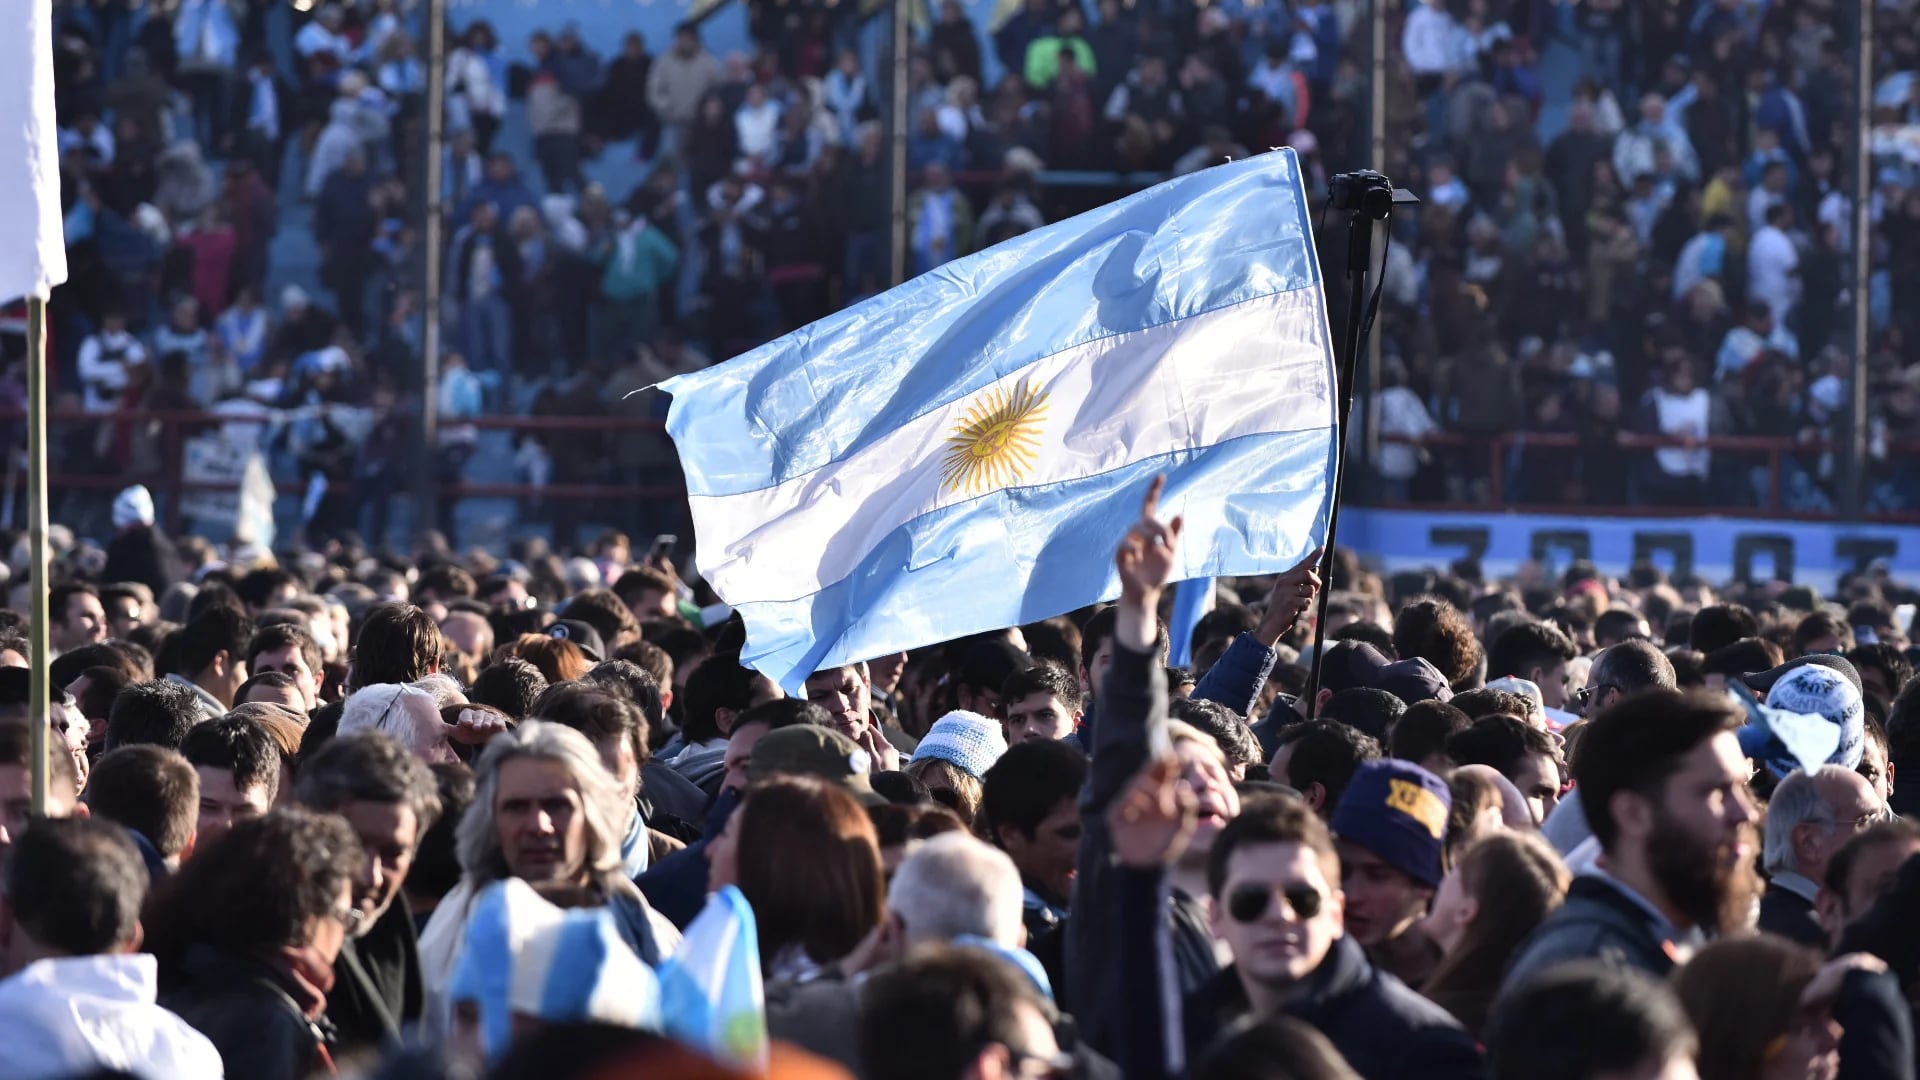 Los organizadores estimaron que se concentraron cerca de 60 mil personas en el estadio y sus alrededores (Adrián Escandar)